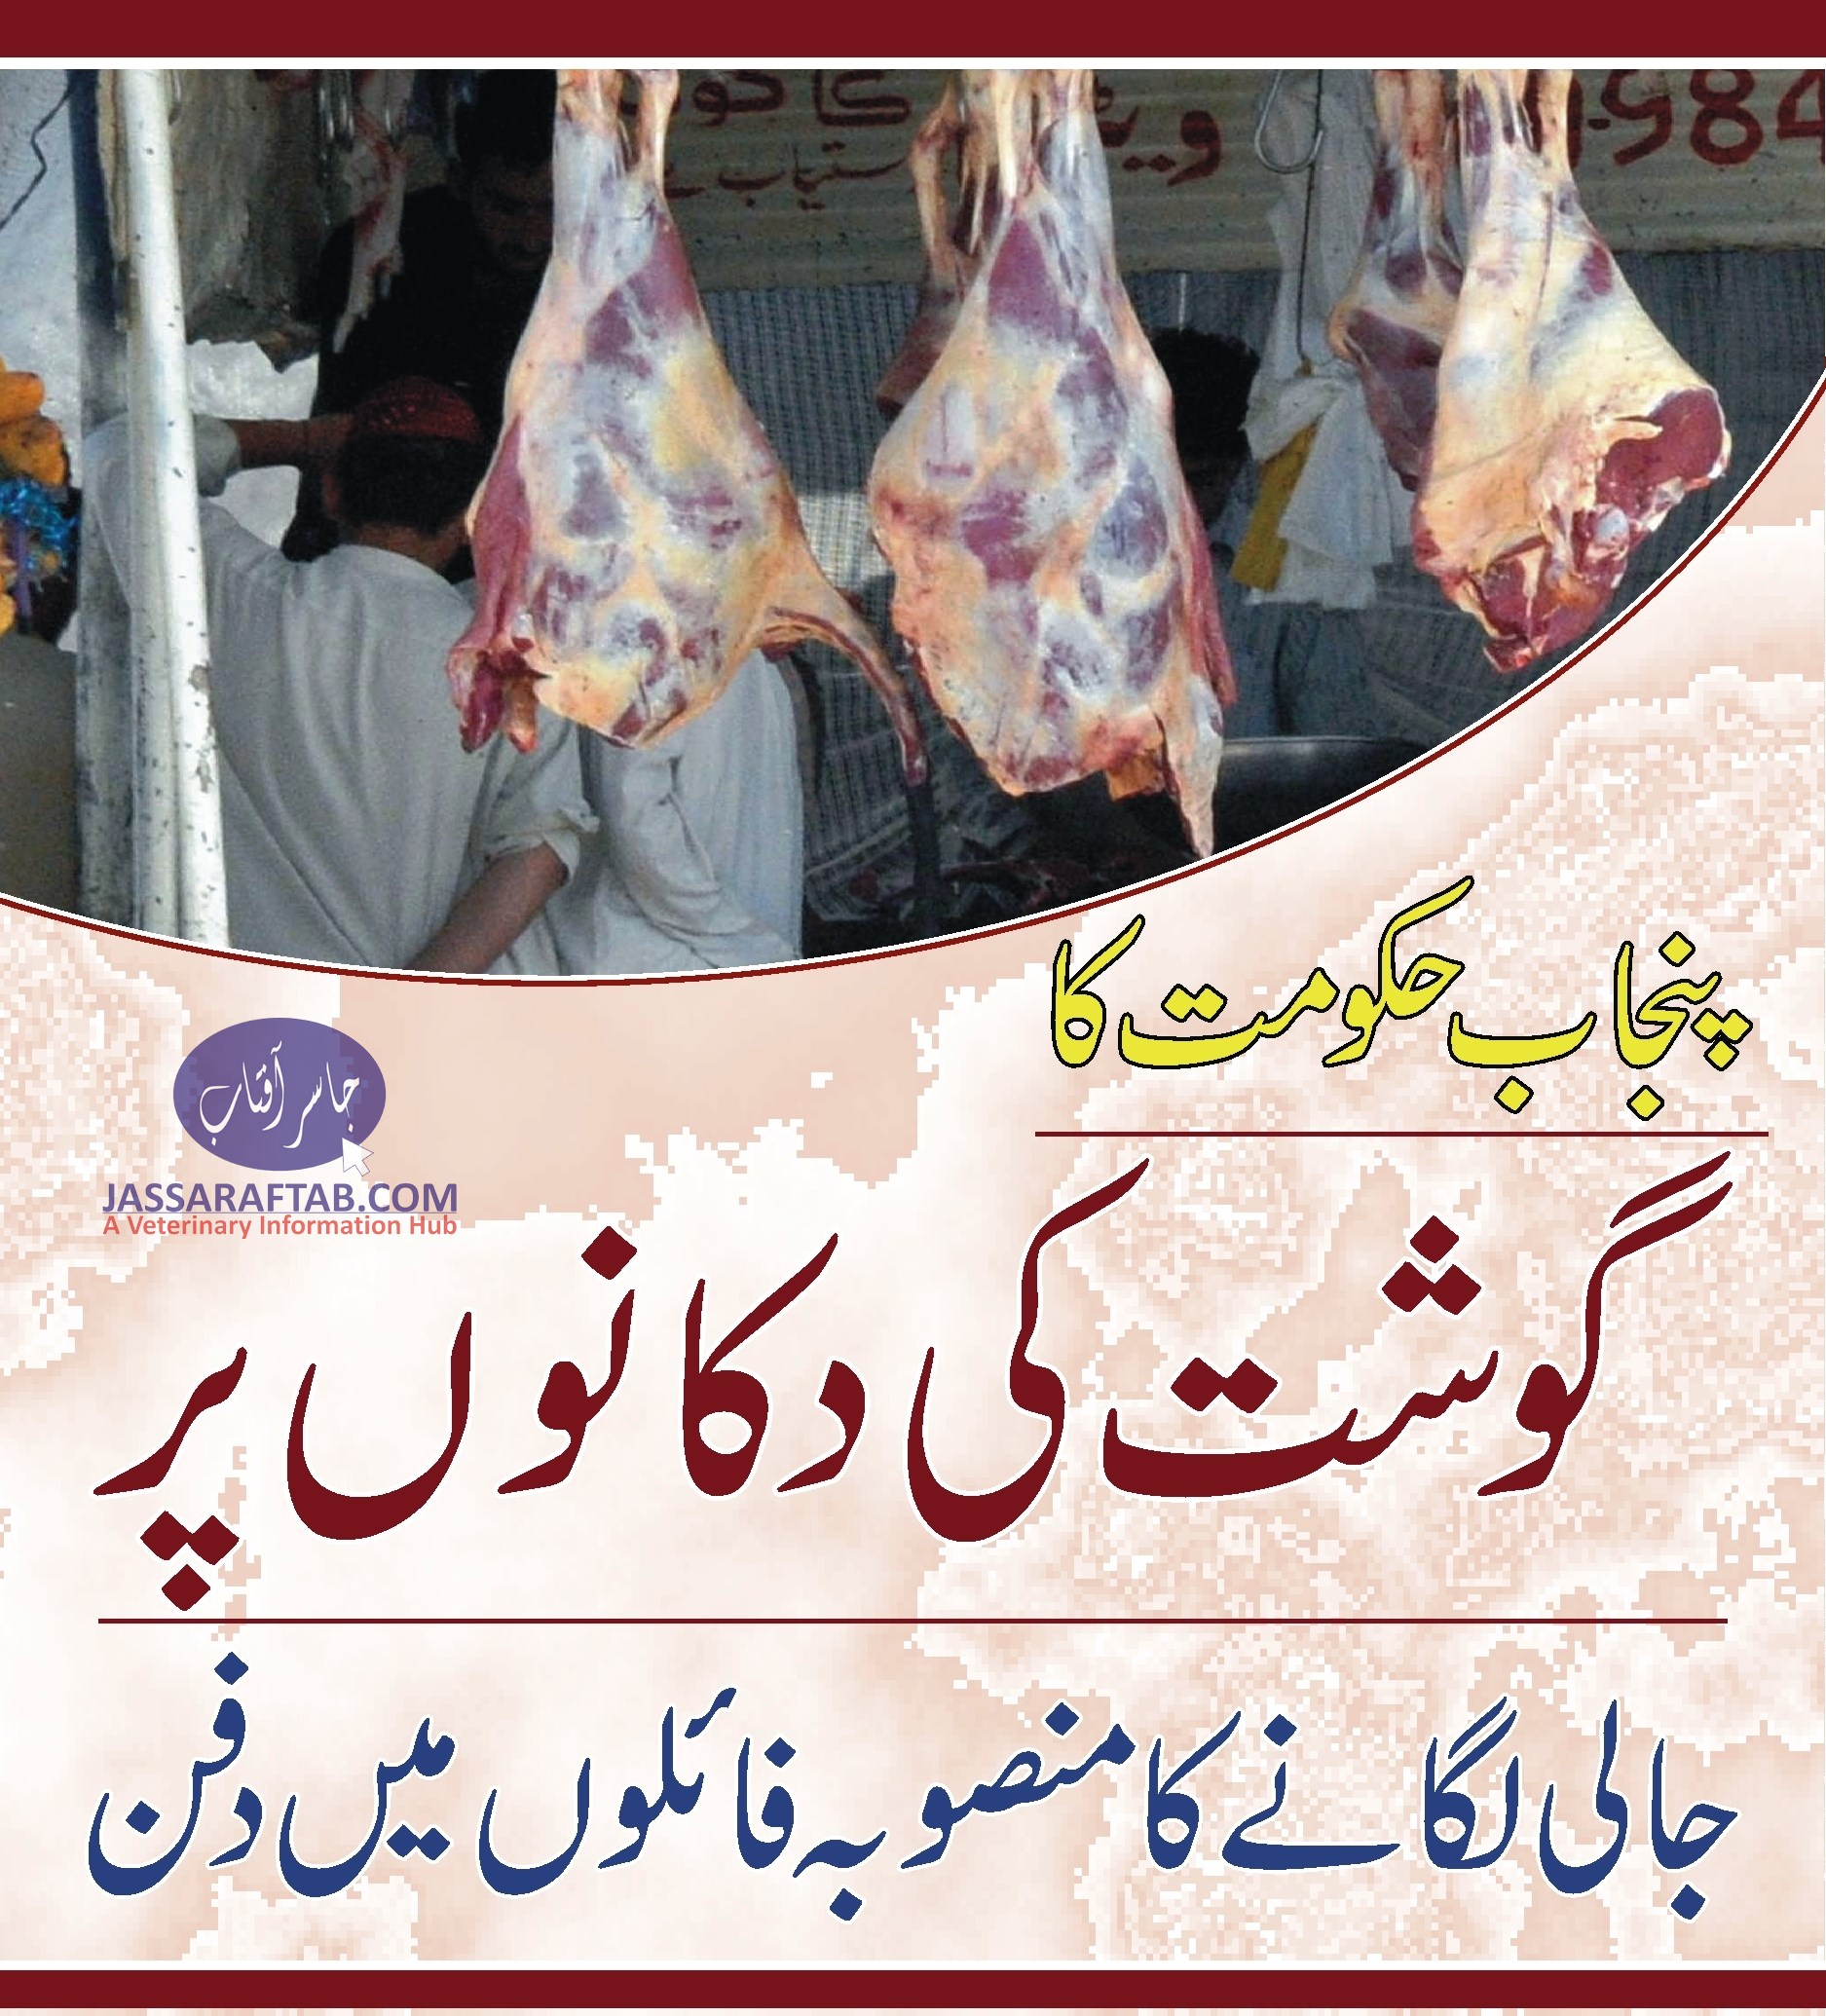 پنجاب حکومت کا گوشت کی دکانوں پر جالی لگانے کا منصوبہ فائلوں میں دفن